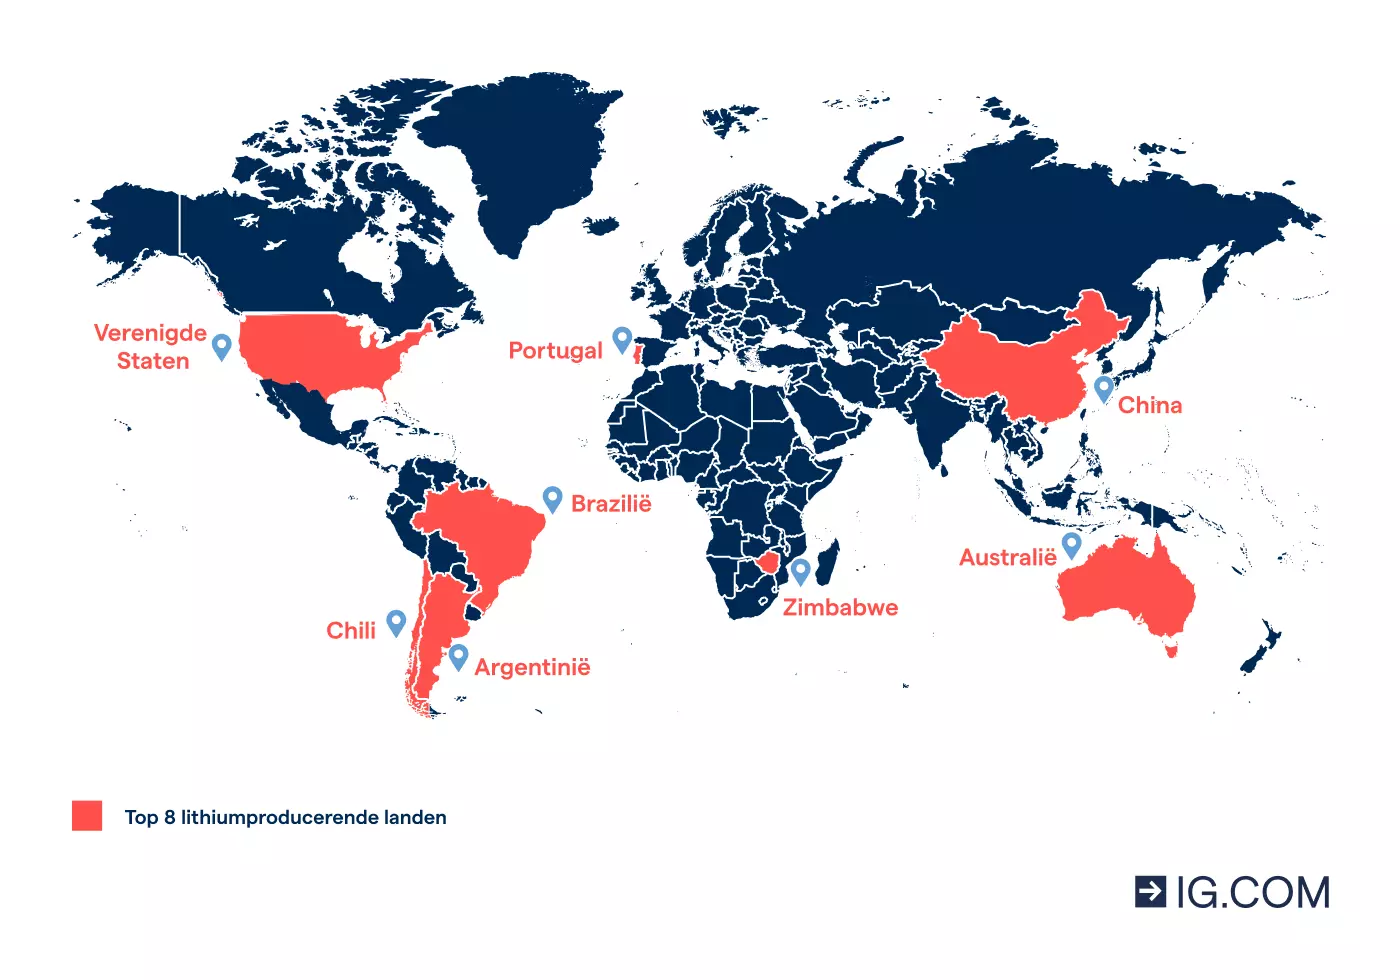 Afbeelding waarin de acht grootste lithiumproducerende landen zijn aangegeven op een wereldkaart.